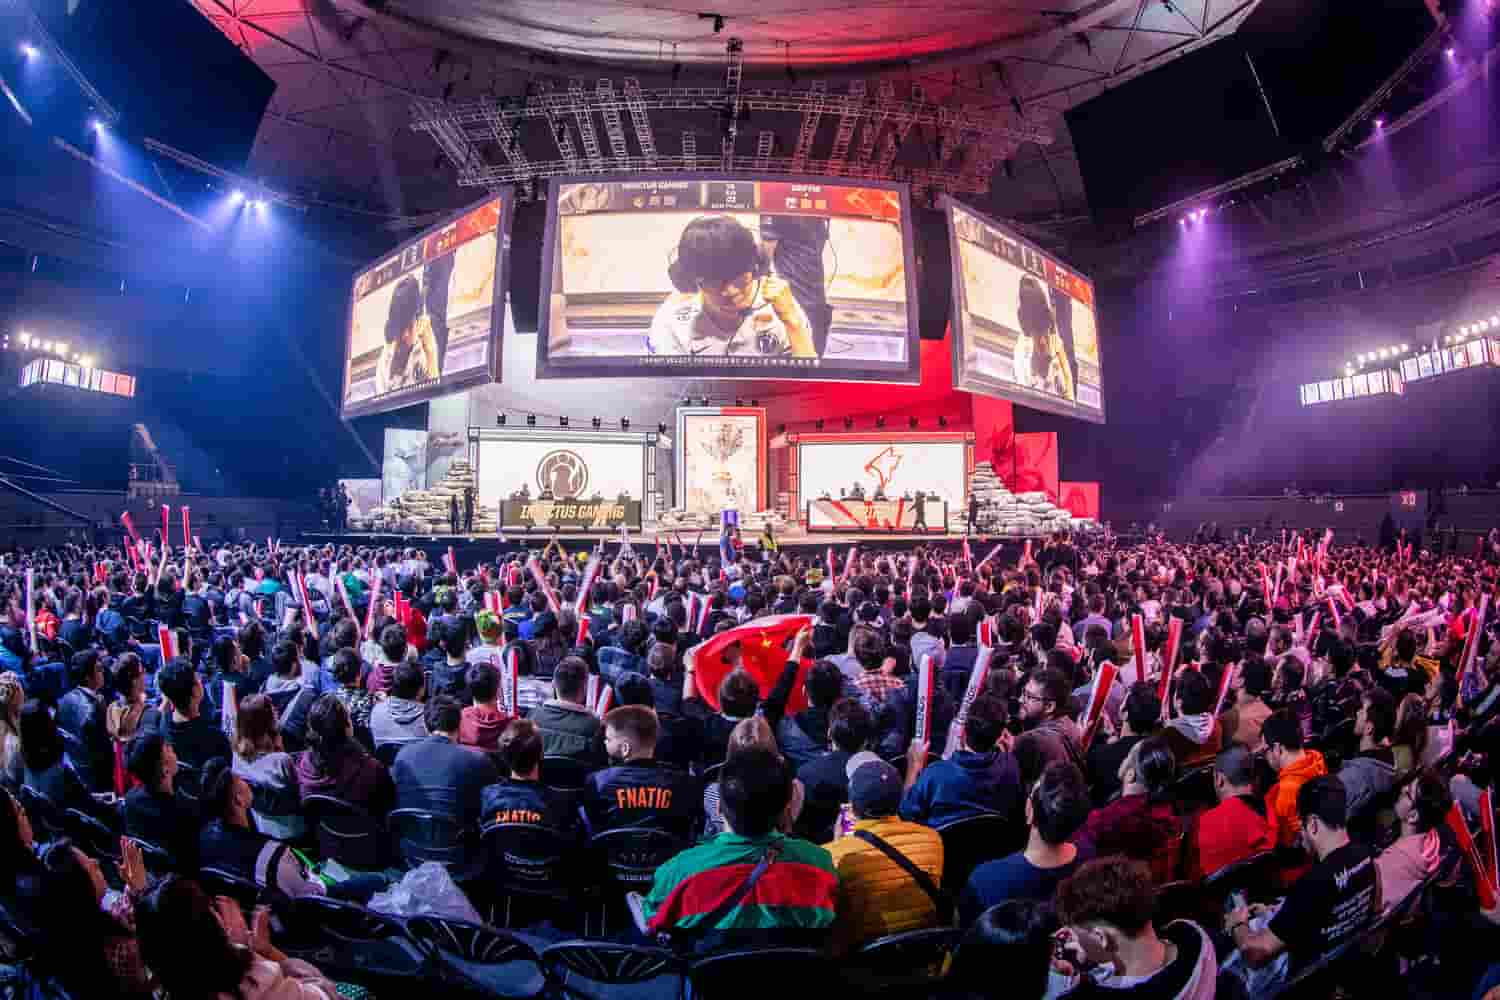 電競下注 英雄聯盟世界大賽 2022台灣運彩超高賠率力挺電玩產業